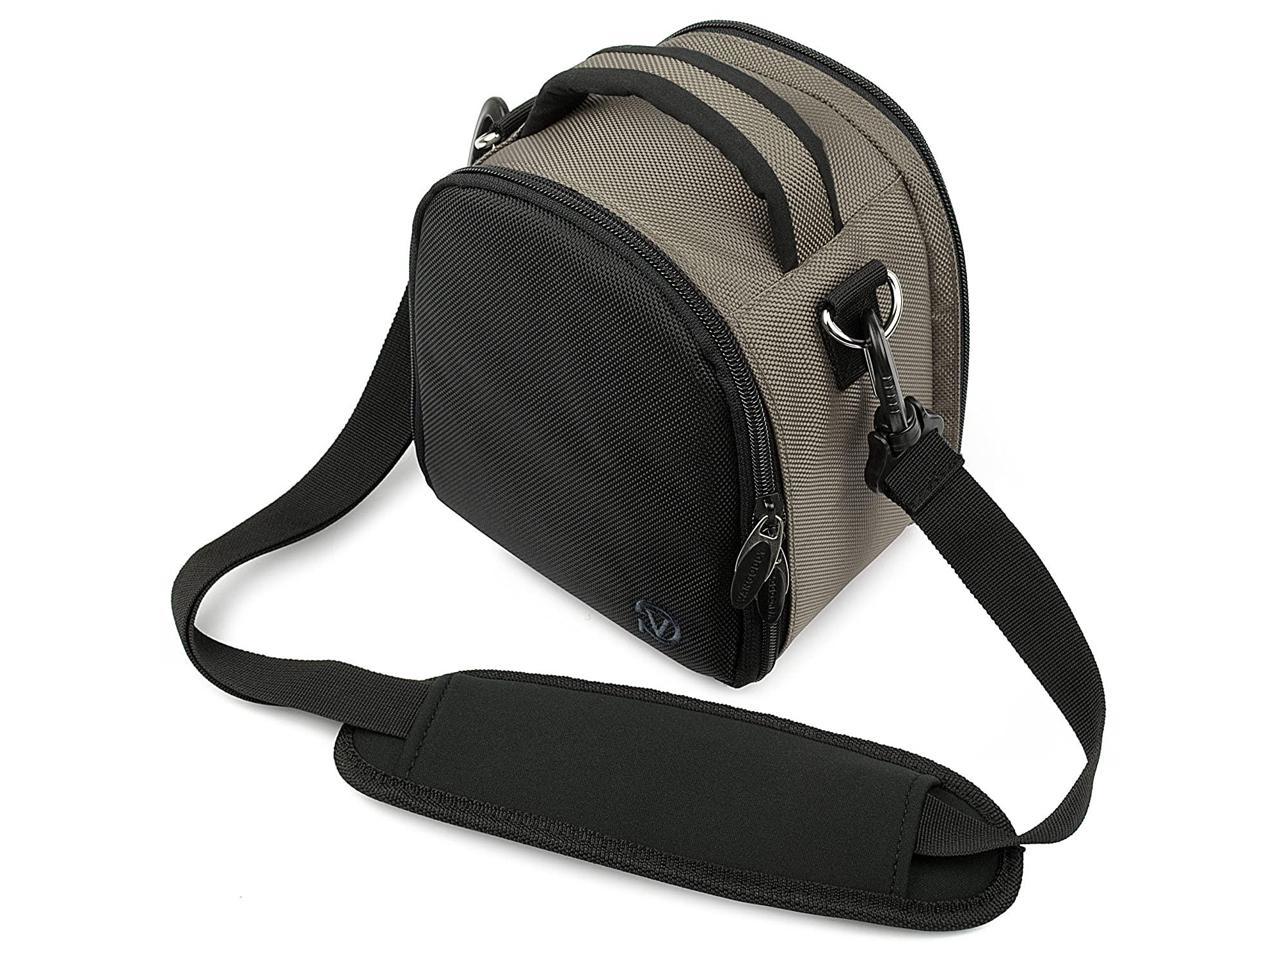 Travel Shoulder Bag Carrying Case P510 for Nikon Coolpix L810 S9100 Digital SLR DSLR Camera Orange 